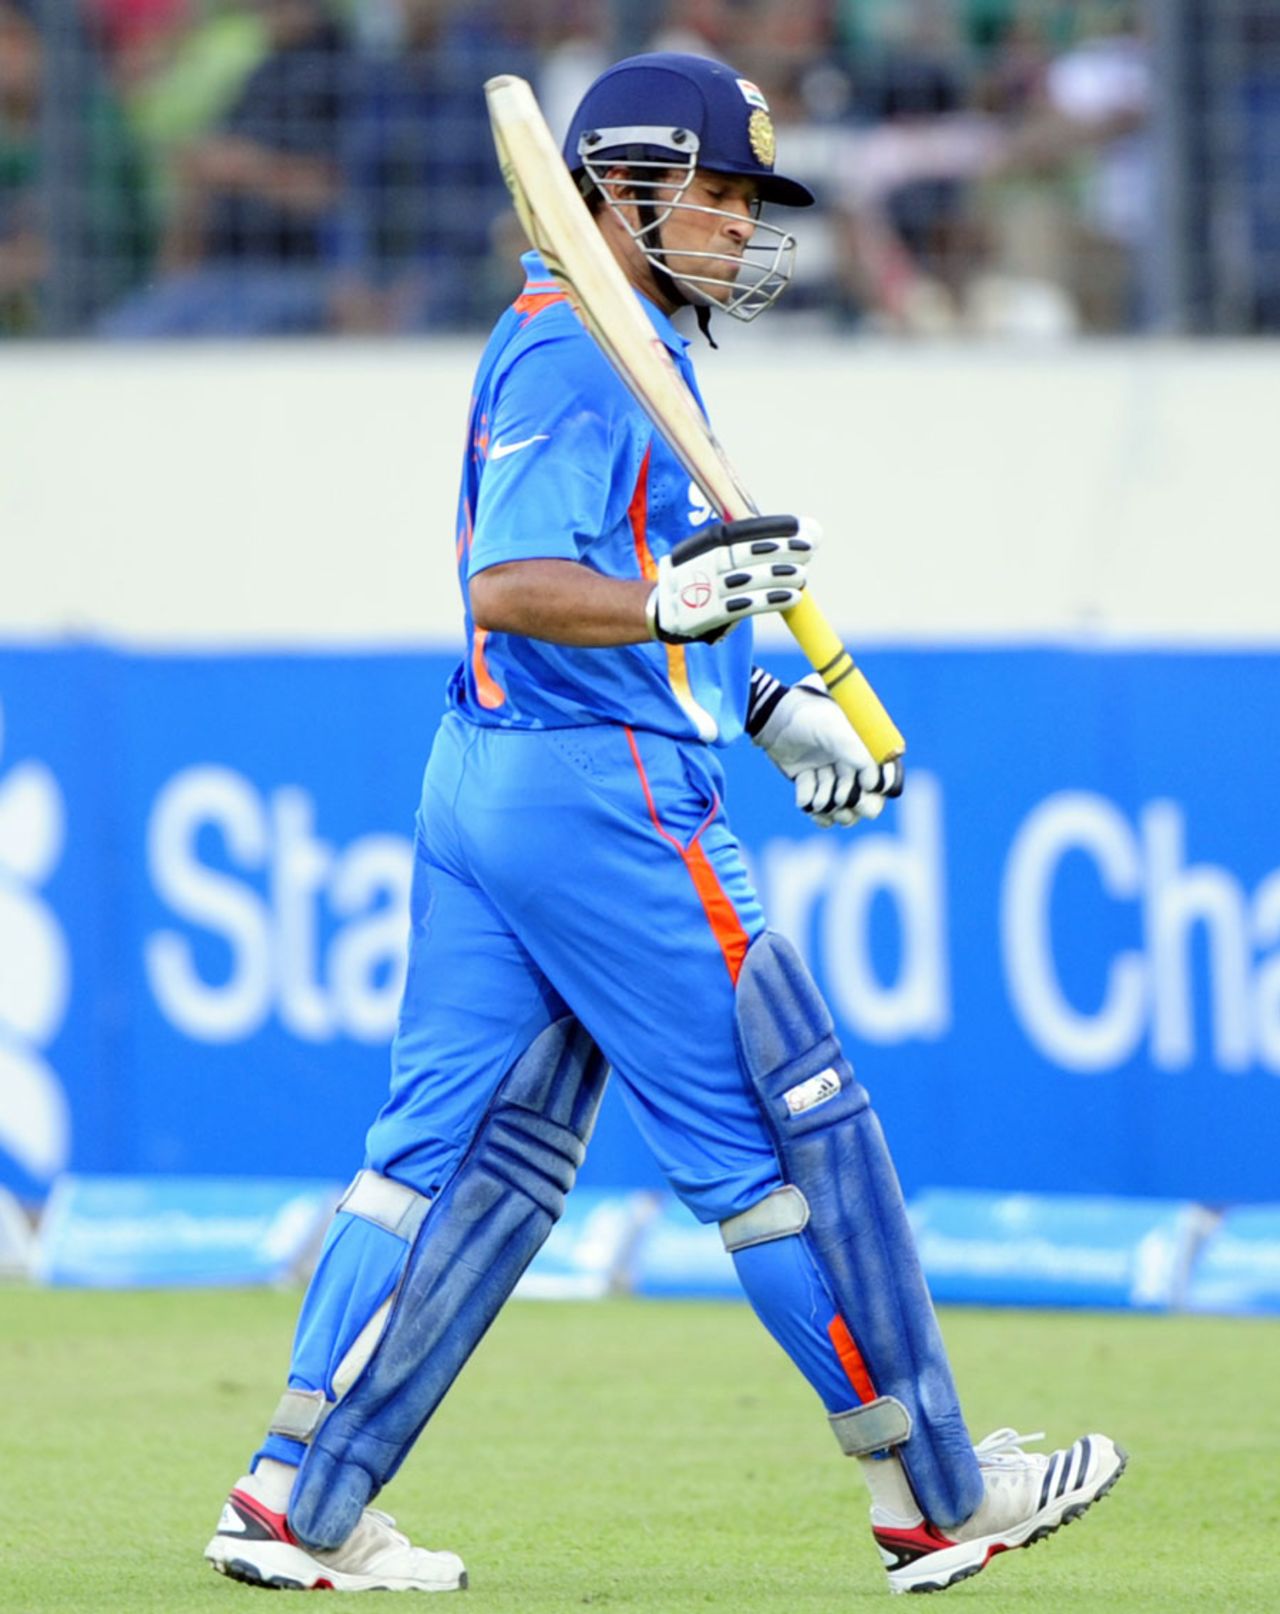 Sachin Tendulkar raises his bat as he walks off, Bangladesh v India, Asia Cup, Mirpur, March 16, 2012